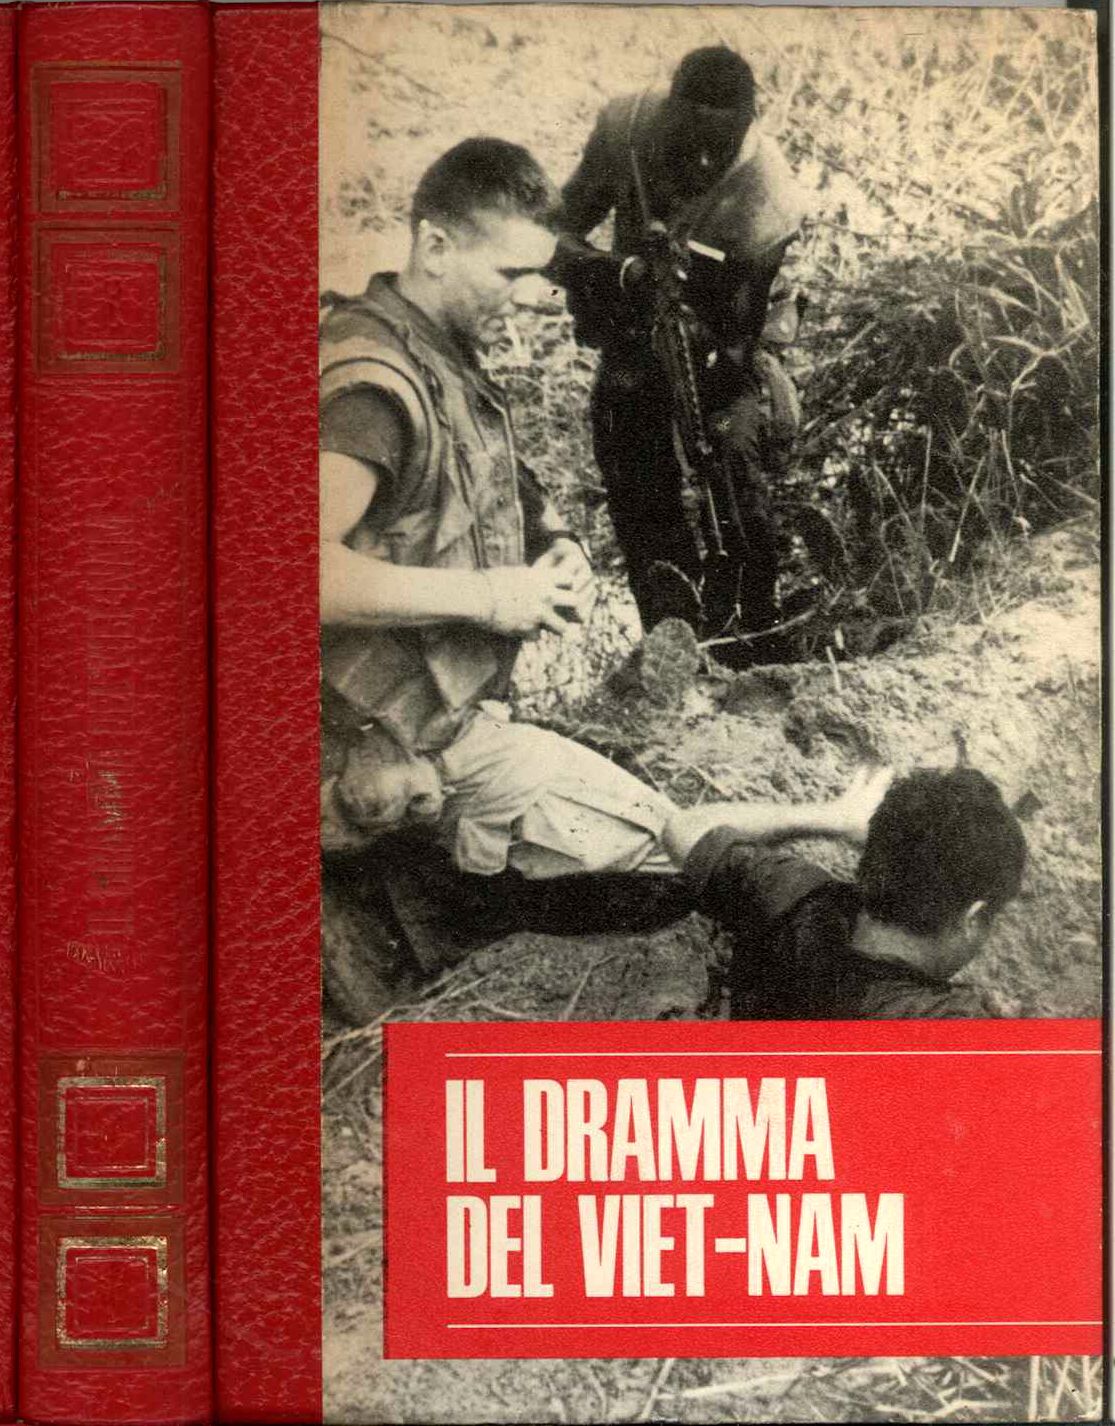 Dramma del Viet-nam